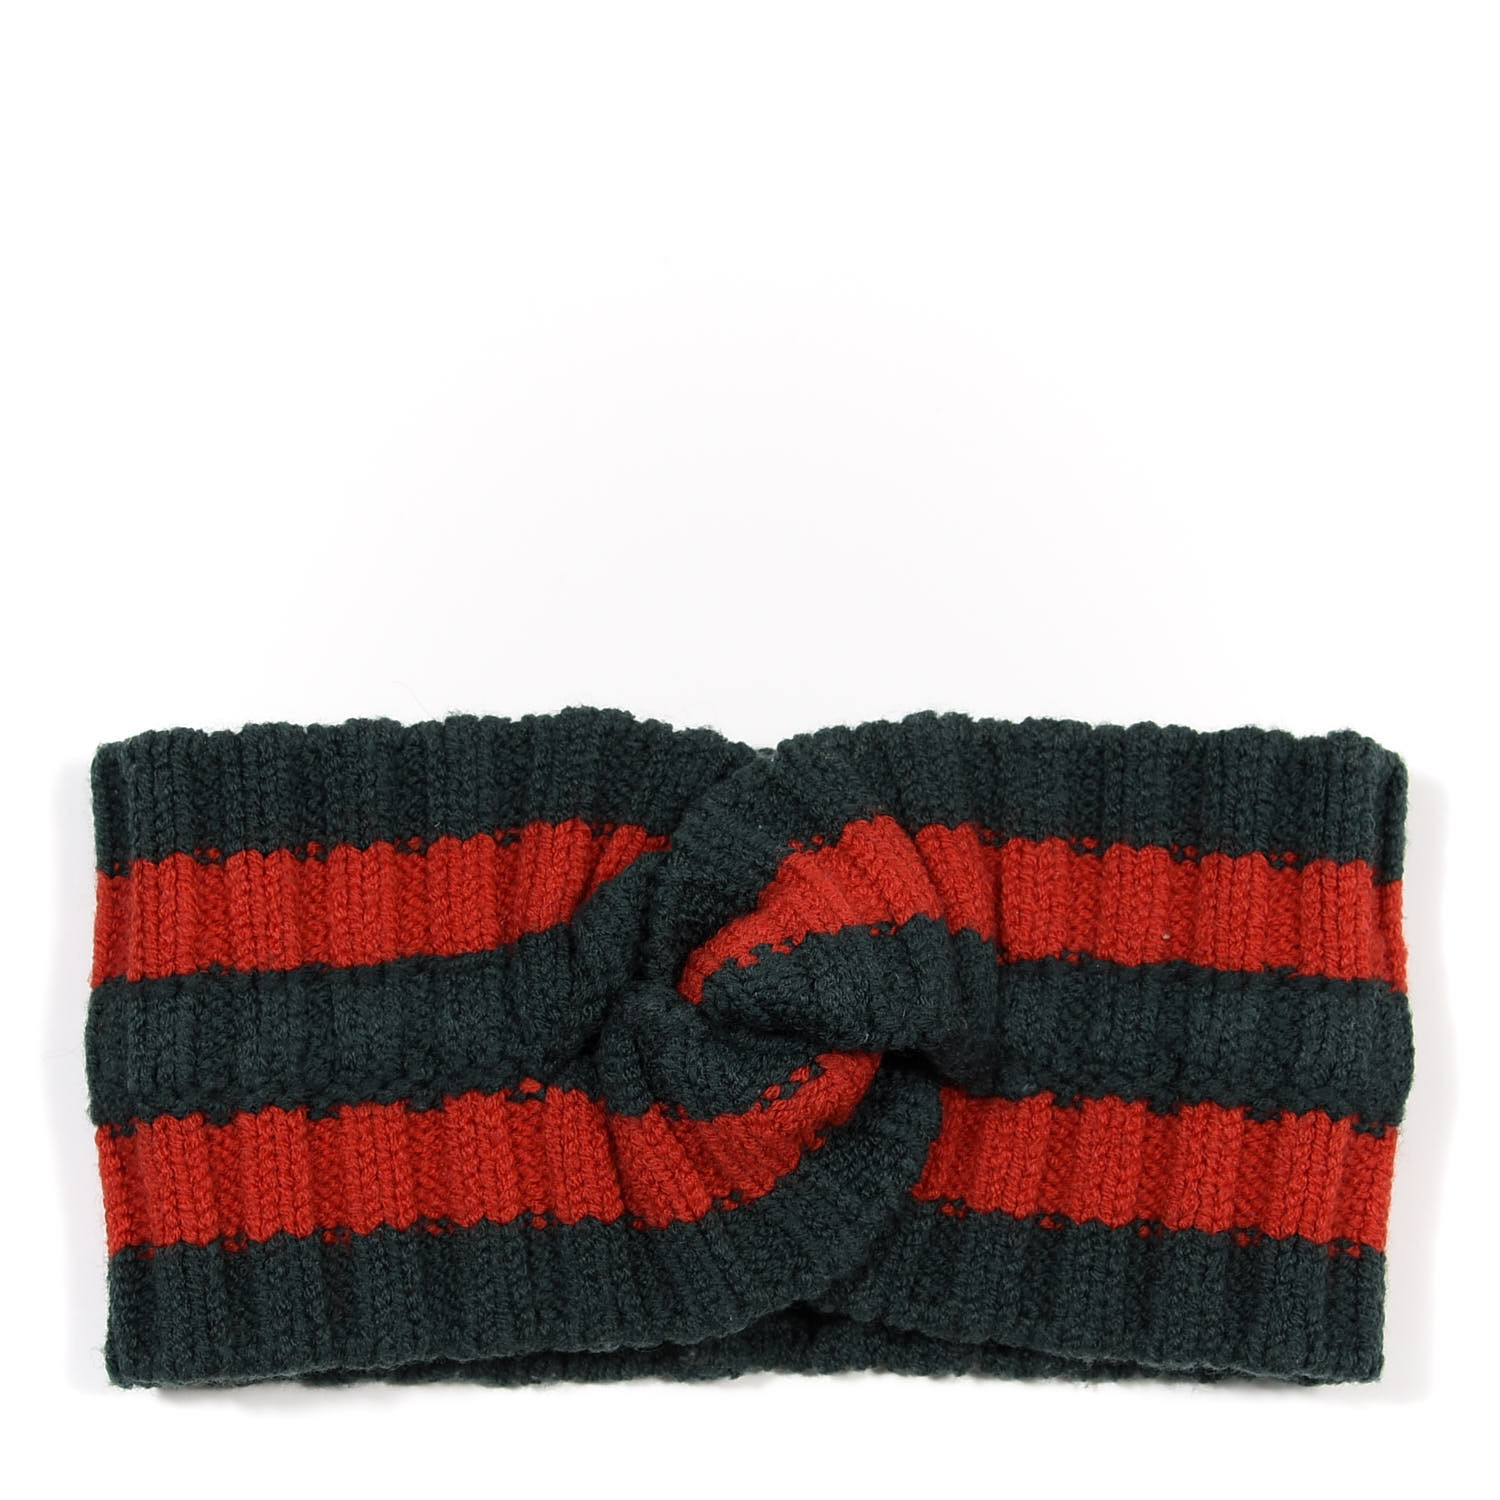 gucci knit headband